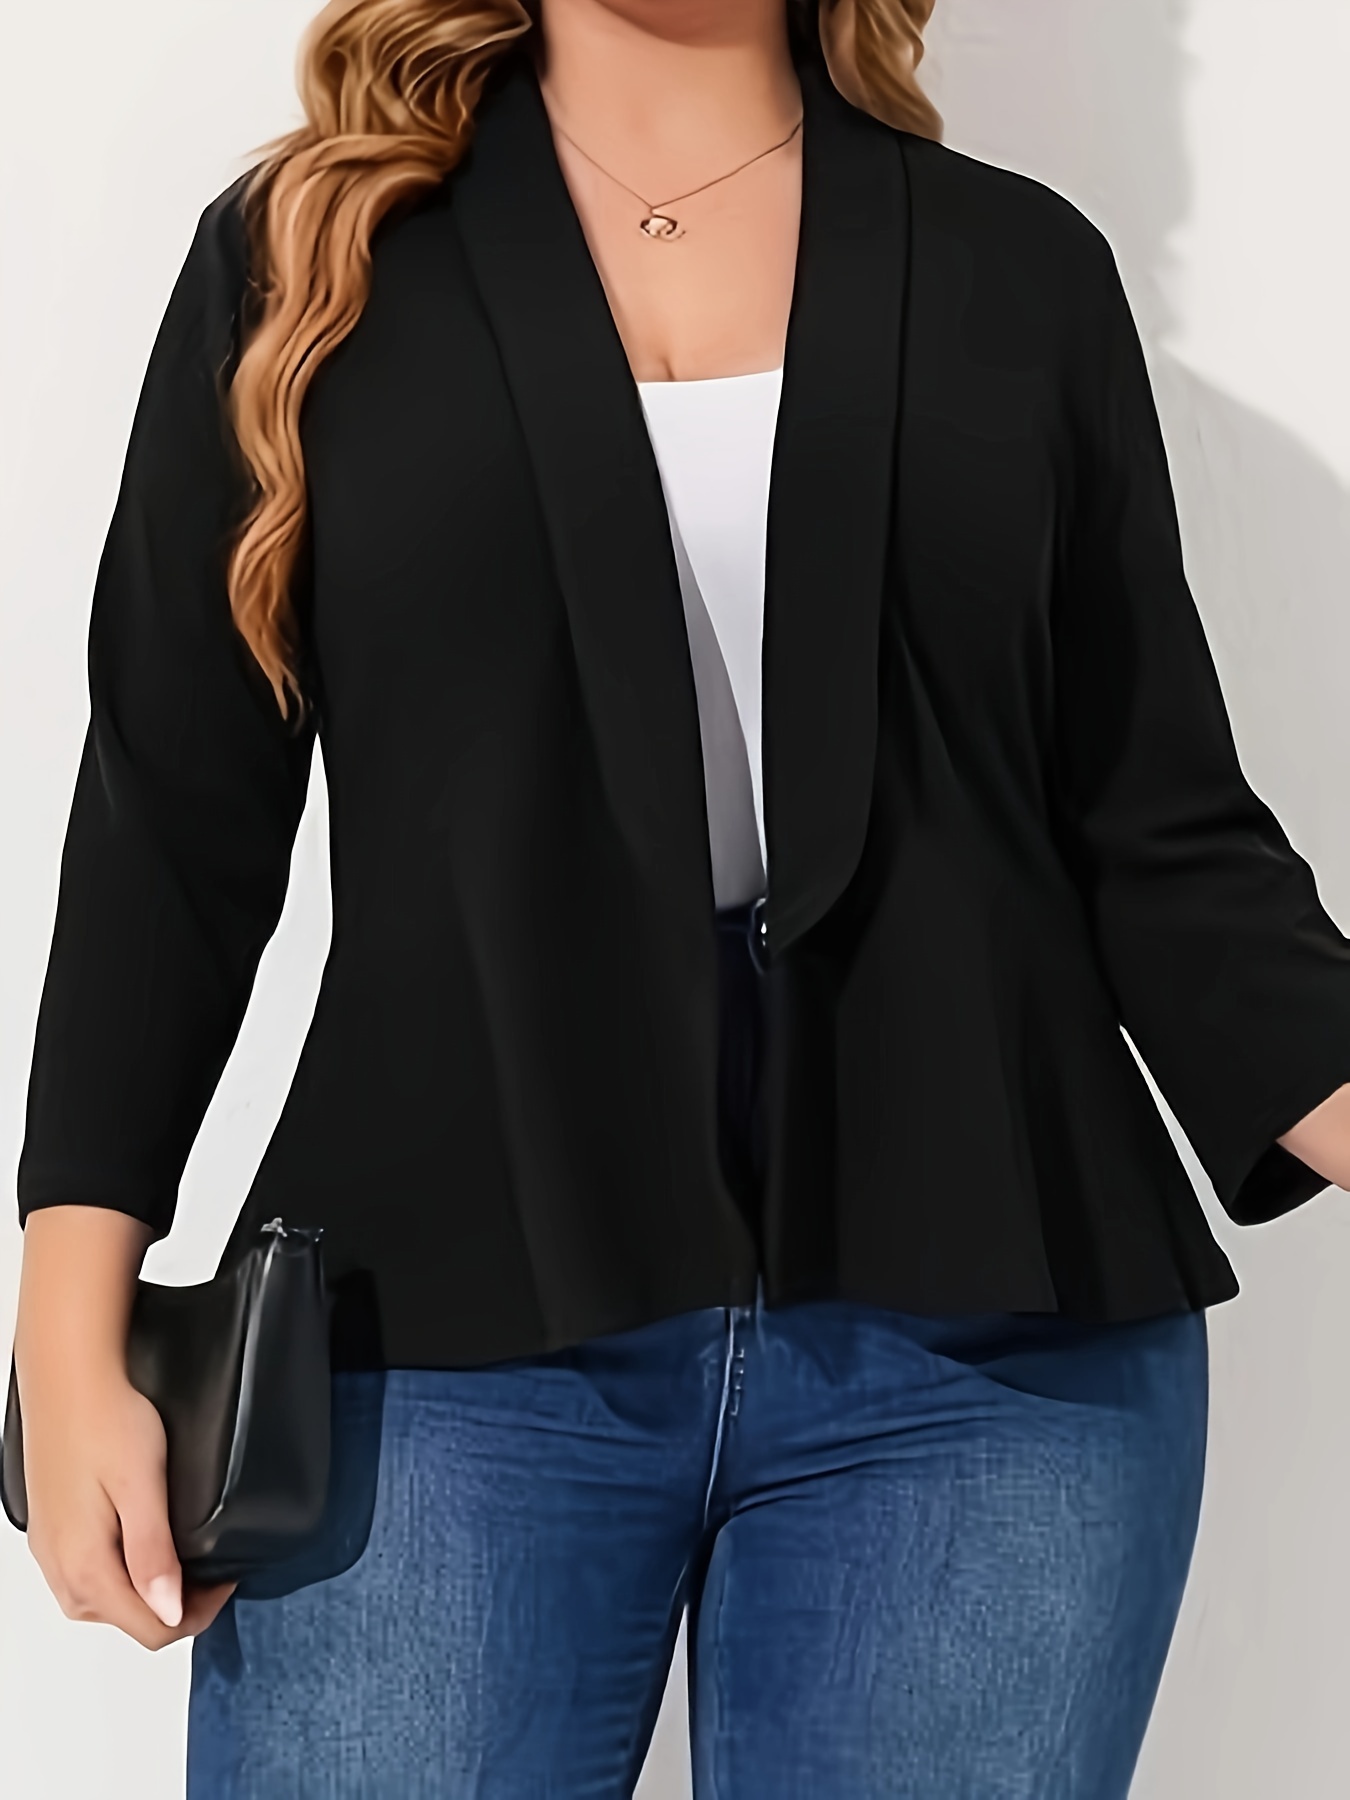 Plus Size Business Casual Suit Set, Women's Plus Solid Long Sleeve Single  Breast Button Lapel Collar Blazer & Pants Suit Two Piece Set